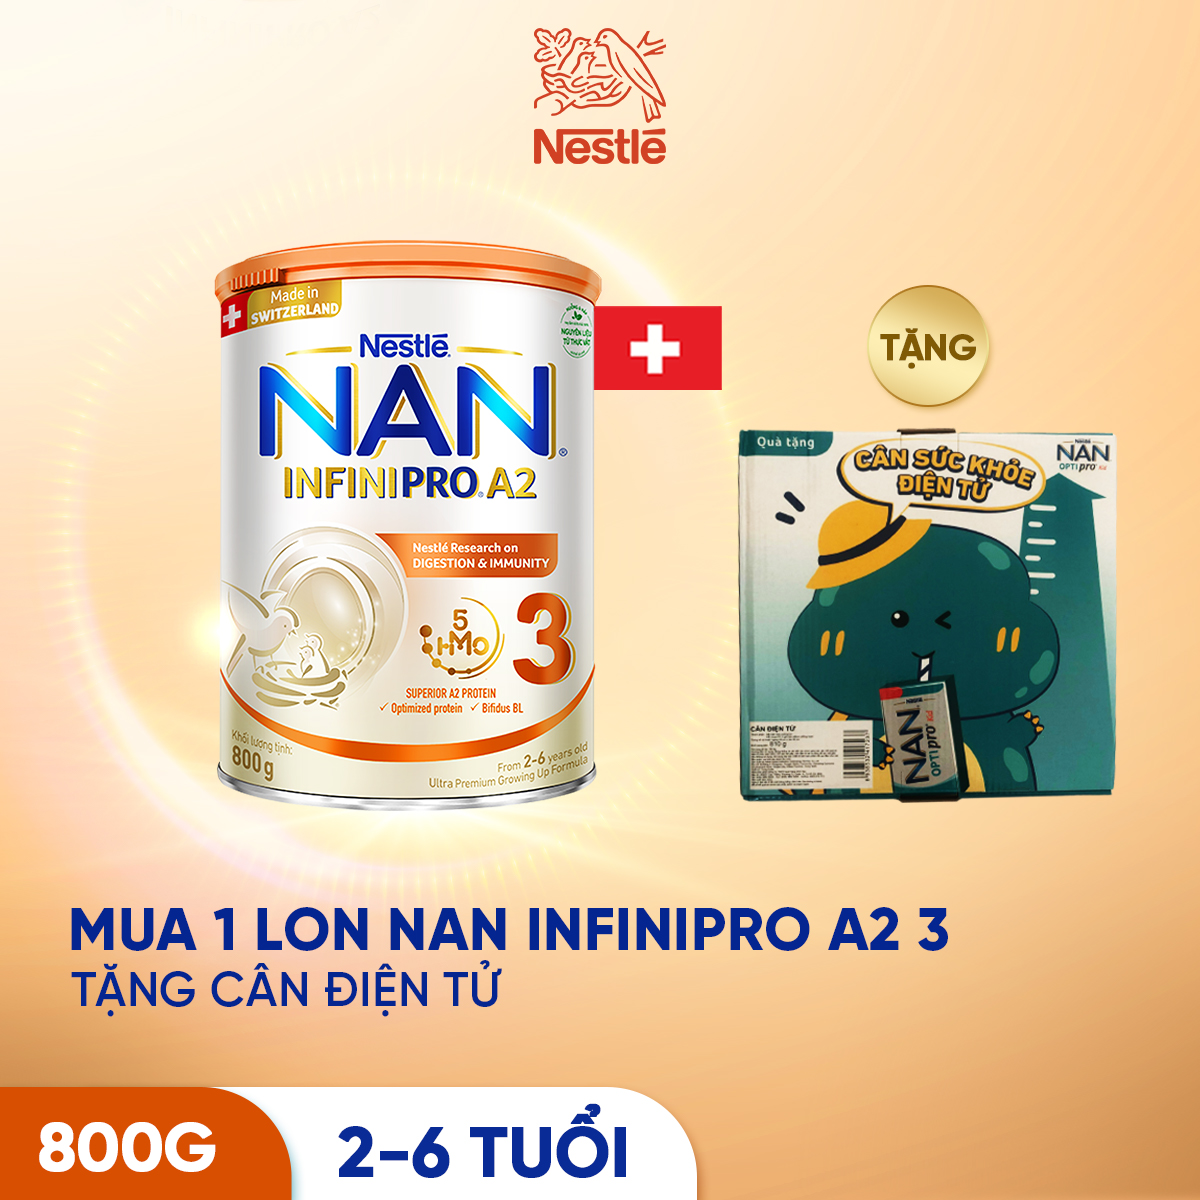 Sản phẩm dinh dưỡng công thức Nestlé NAN INFINIPRO A2 bước 3 800g từ Thụy Sỹ giúp dung nạp tiêu hóa tốt sau 7 ngày - Tặng Cân điện tử